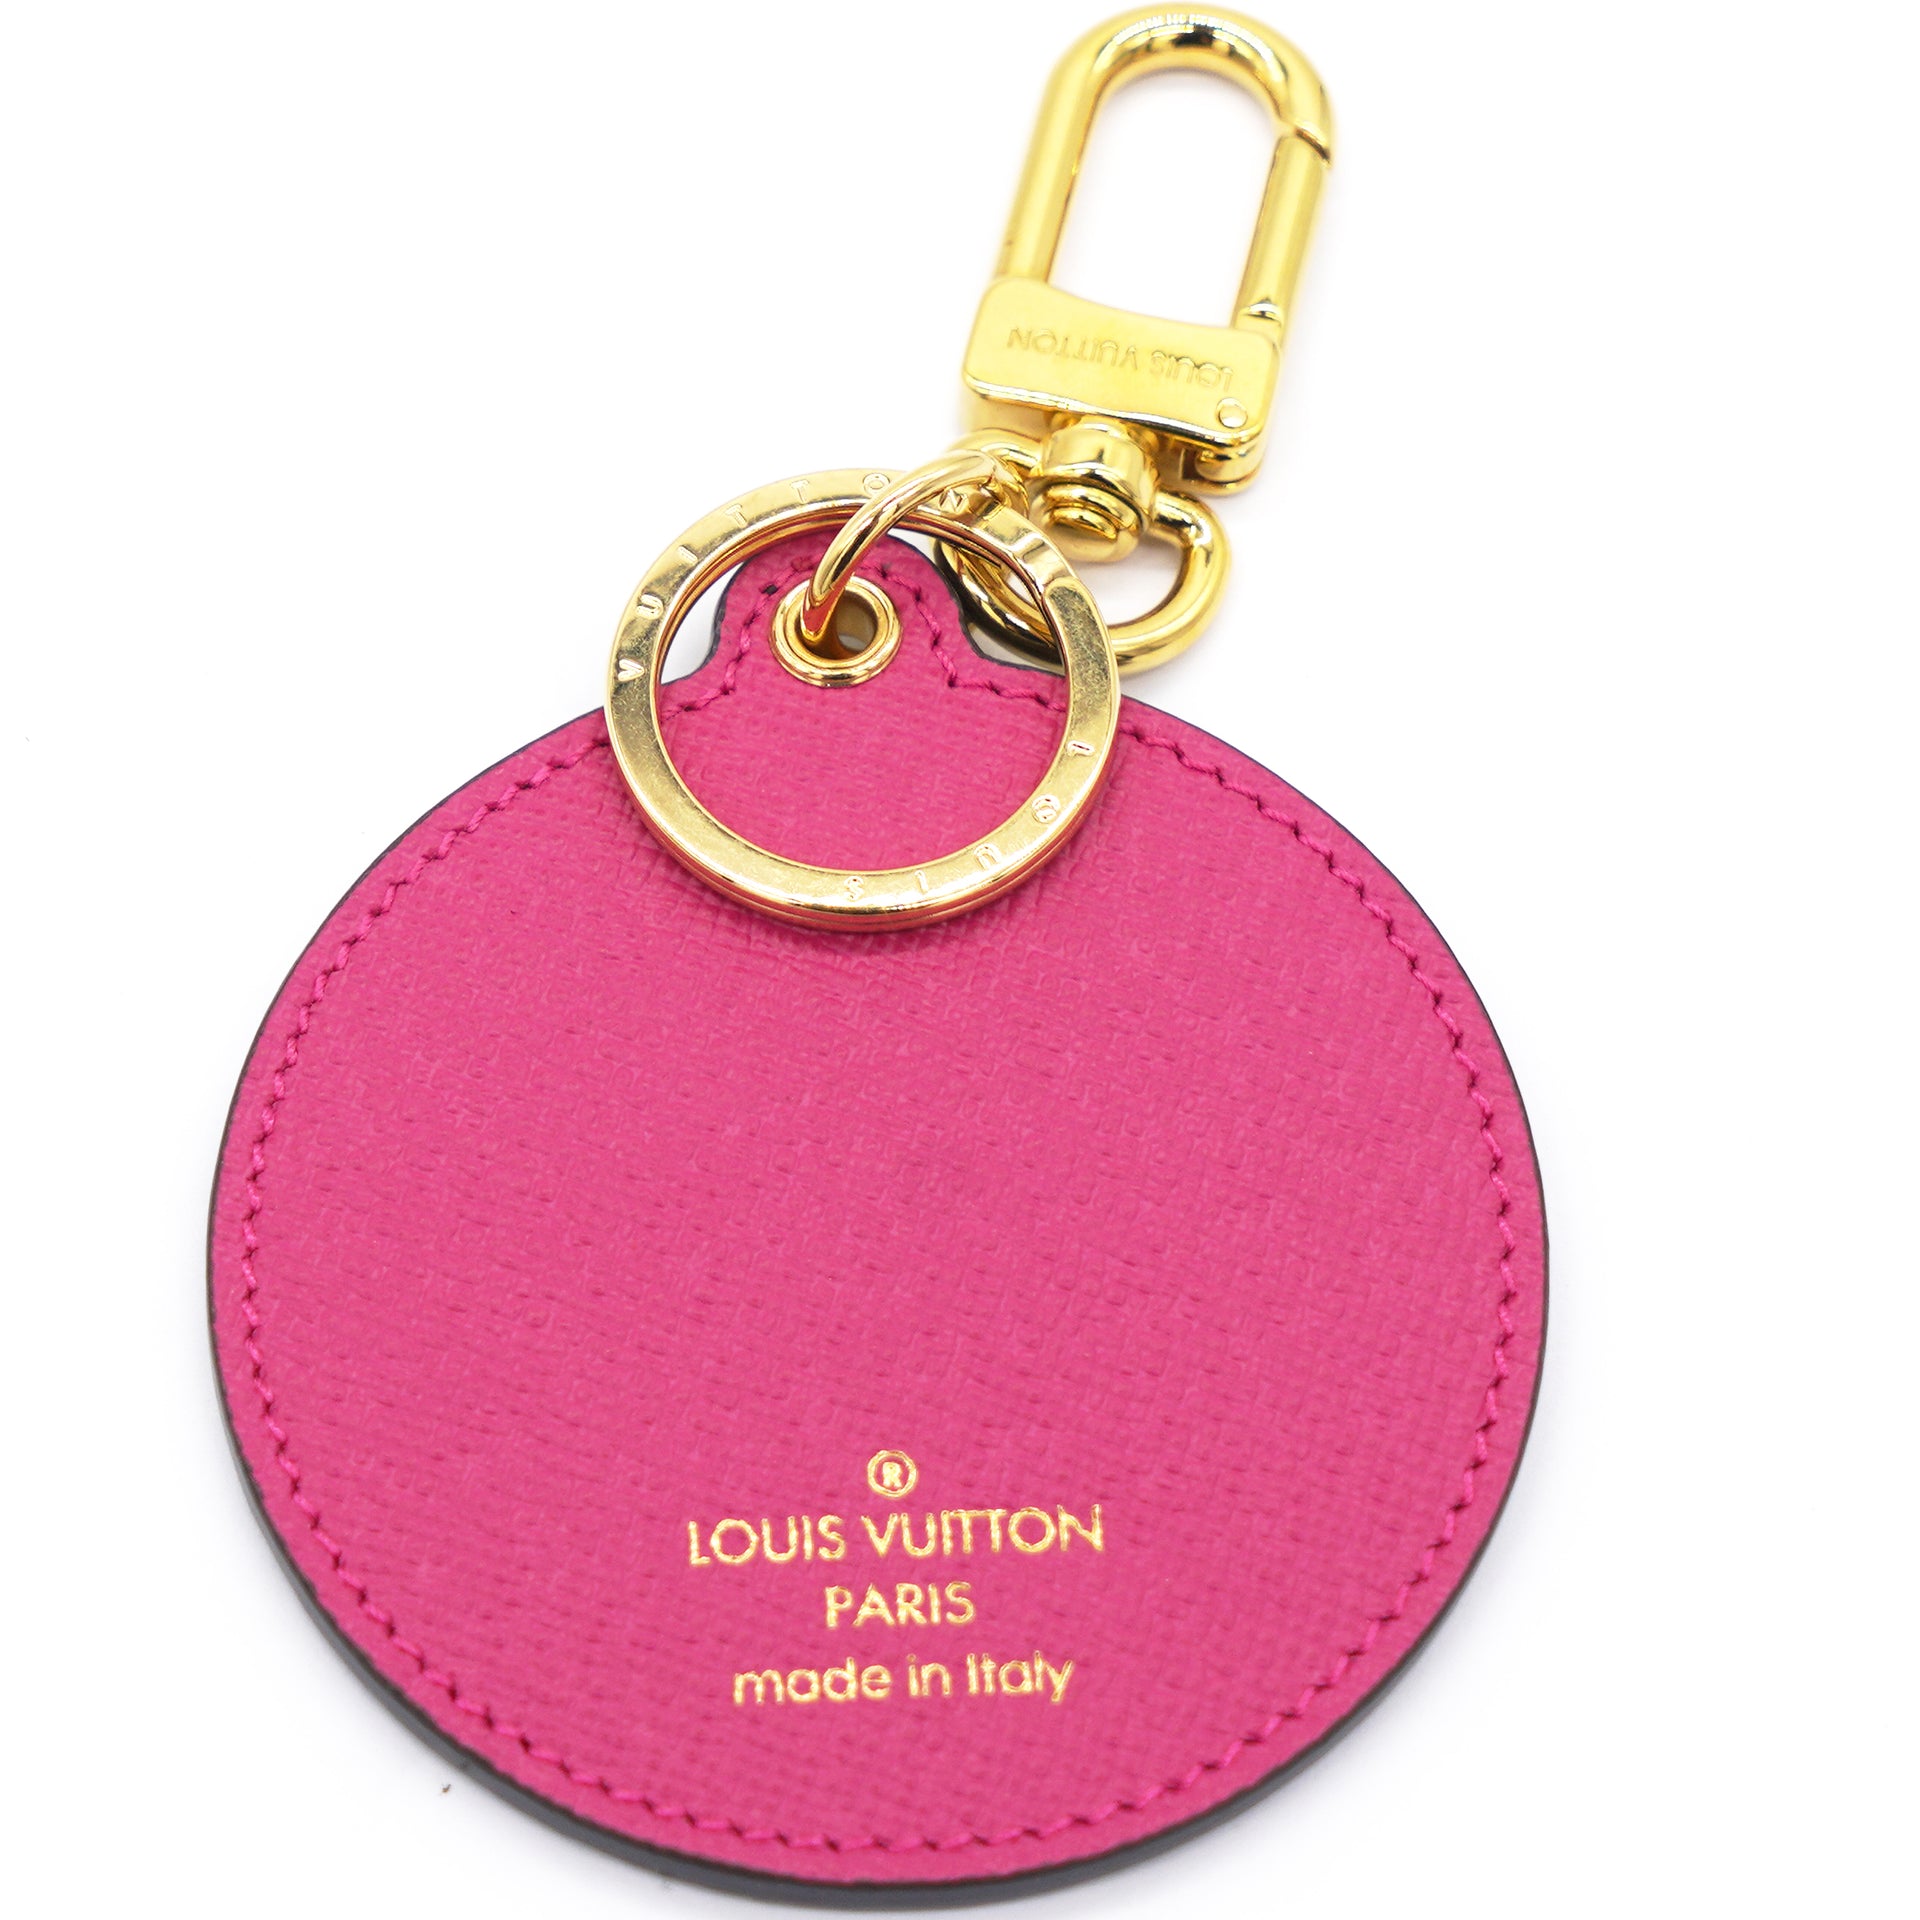 Monogram Love Lock Bag Charm Keyring